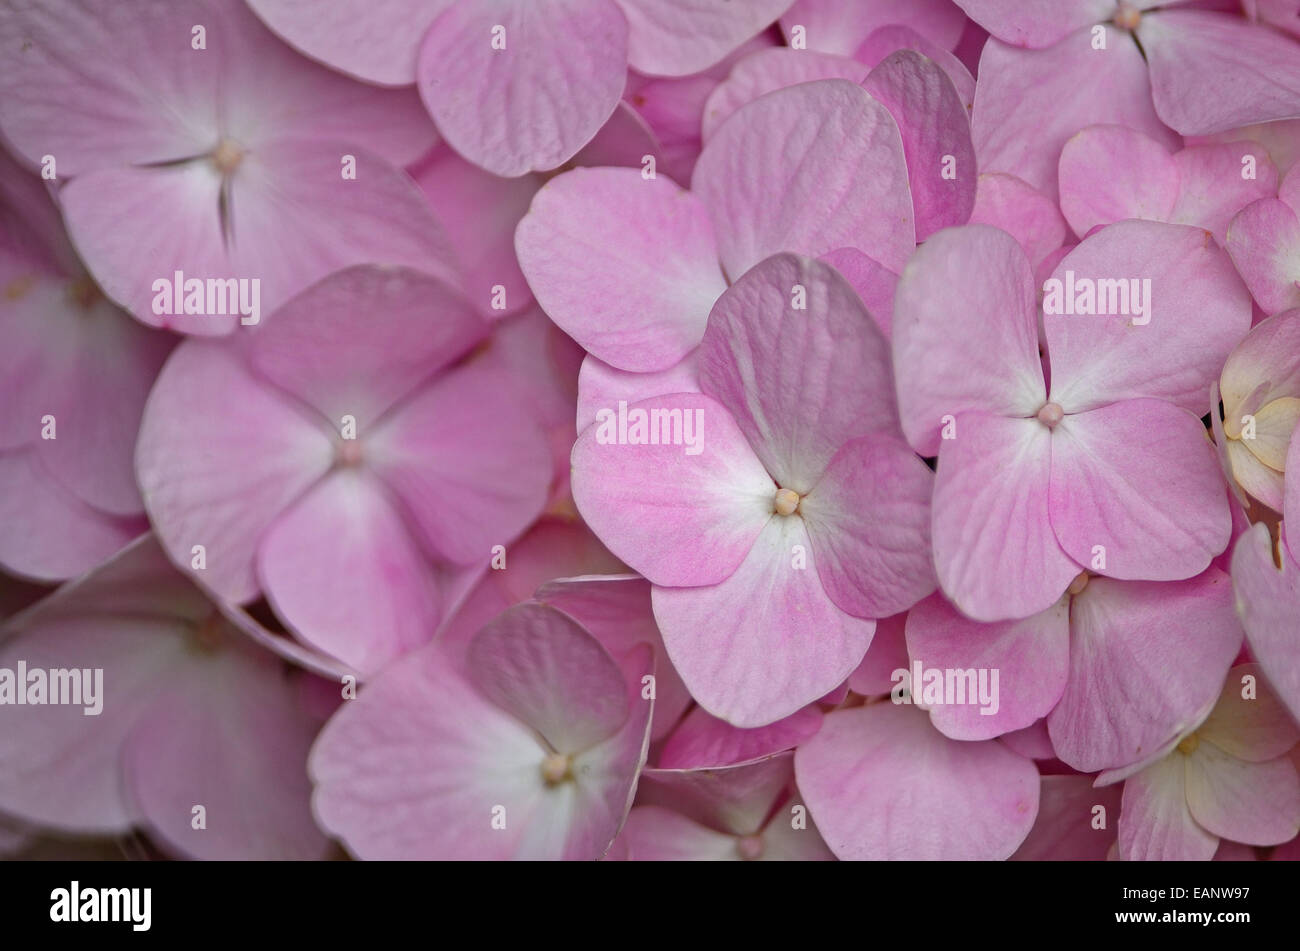 Beautiful pink Hydrangea flowers, petal background pattern Stock Photo